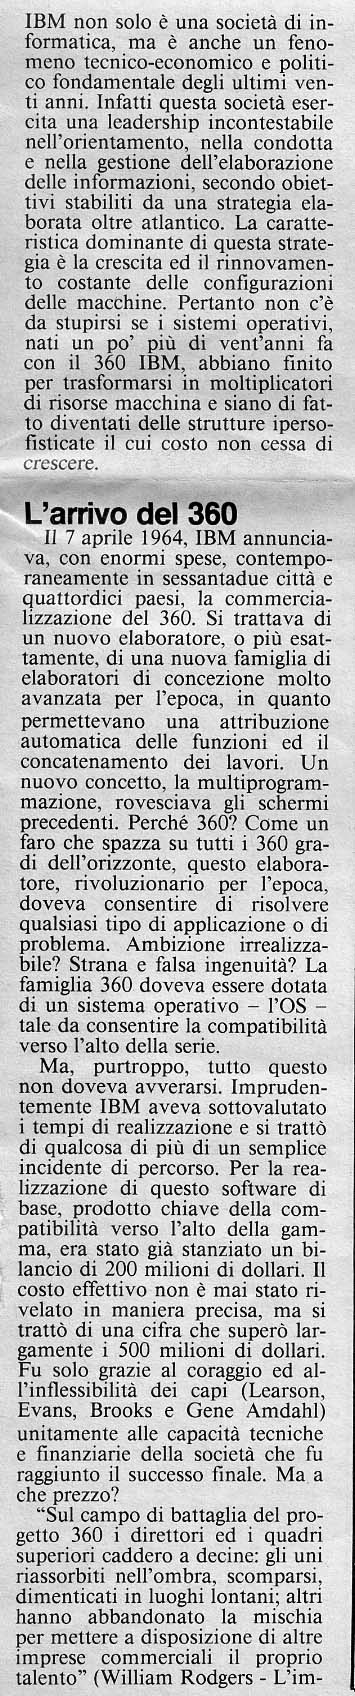 Computerworld Italia, 12 novembre 1986, pag. 27 e ssgg.